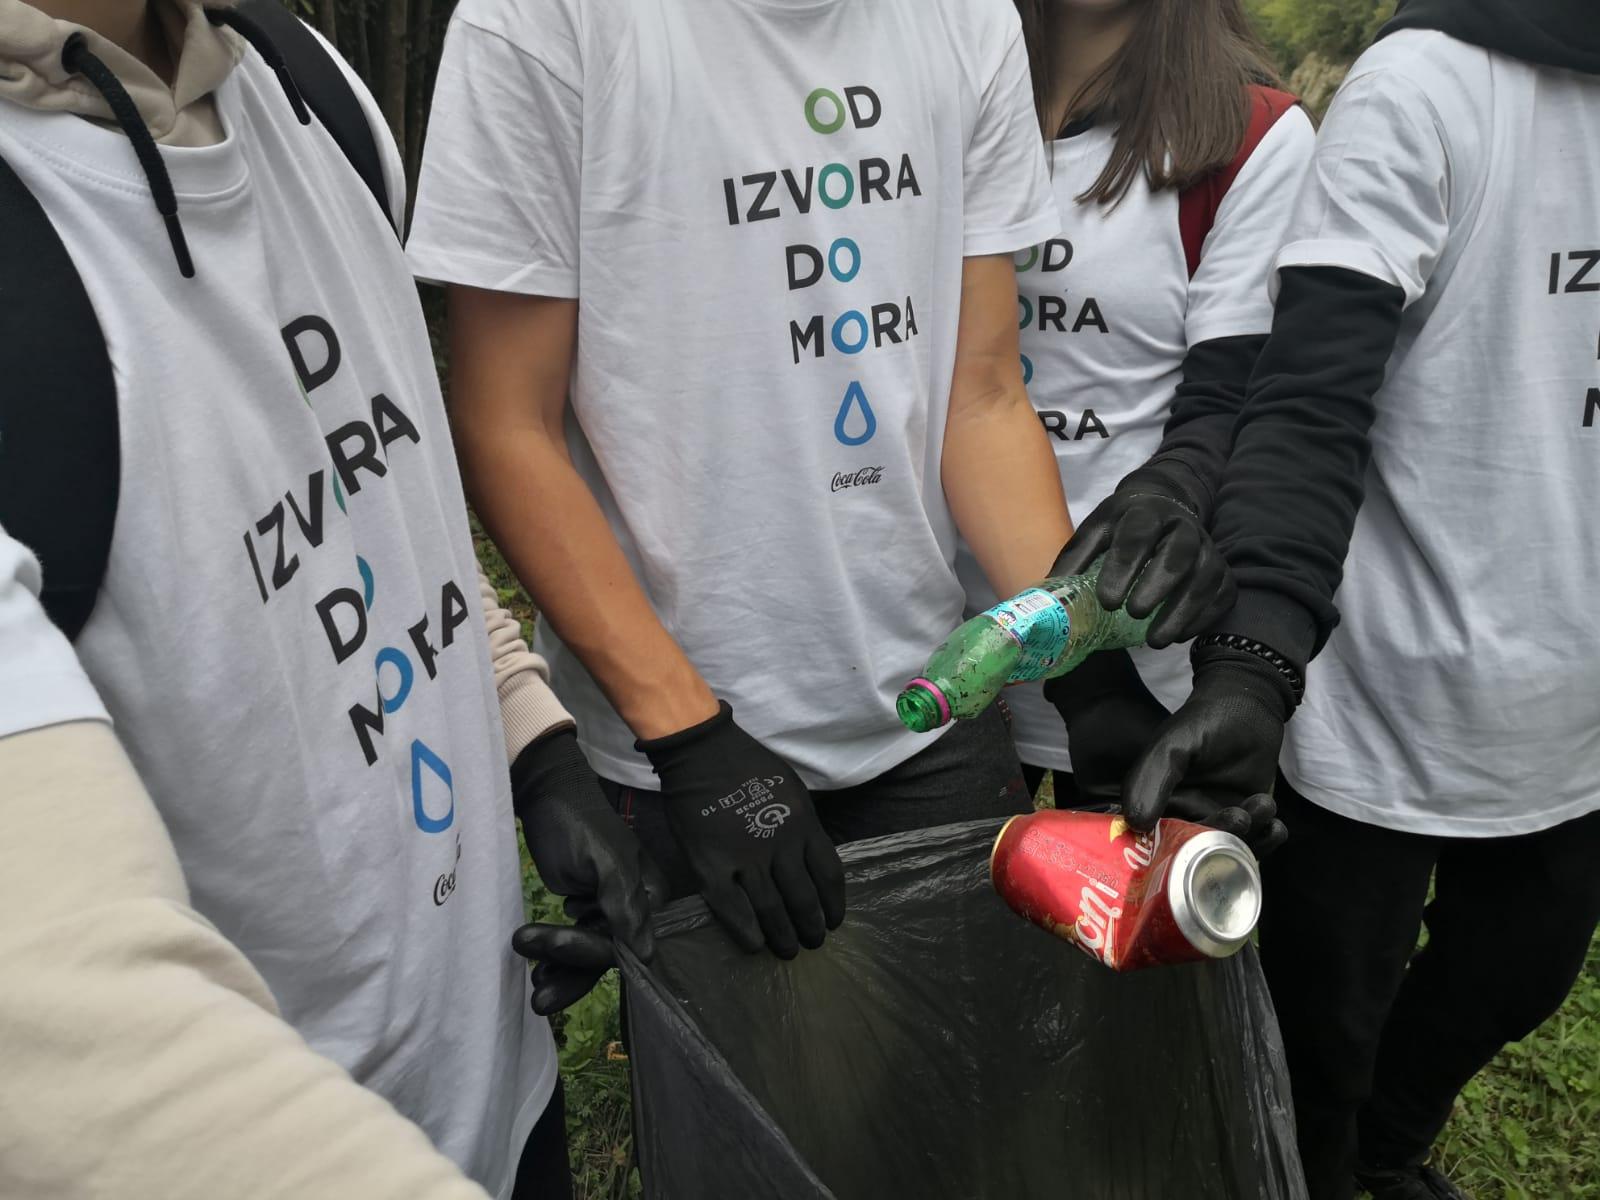 Coca-Colin projekat Od izvora do mora nastavlja se akcijom prikupljanja ambalažnog otpada u Tuzli - Avaz